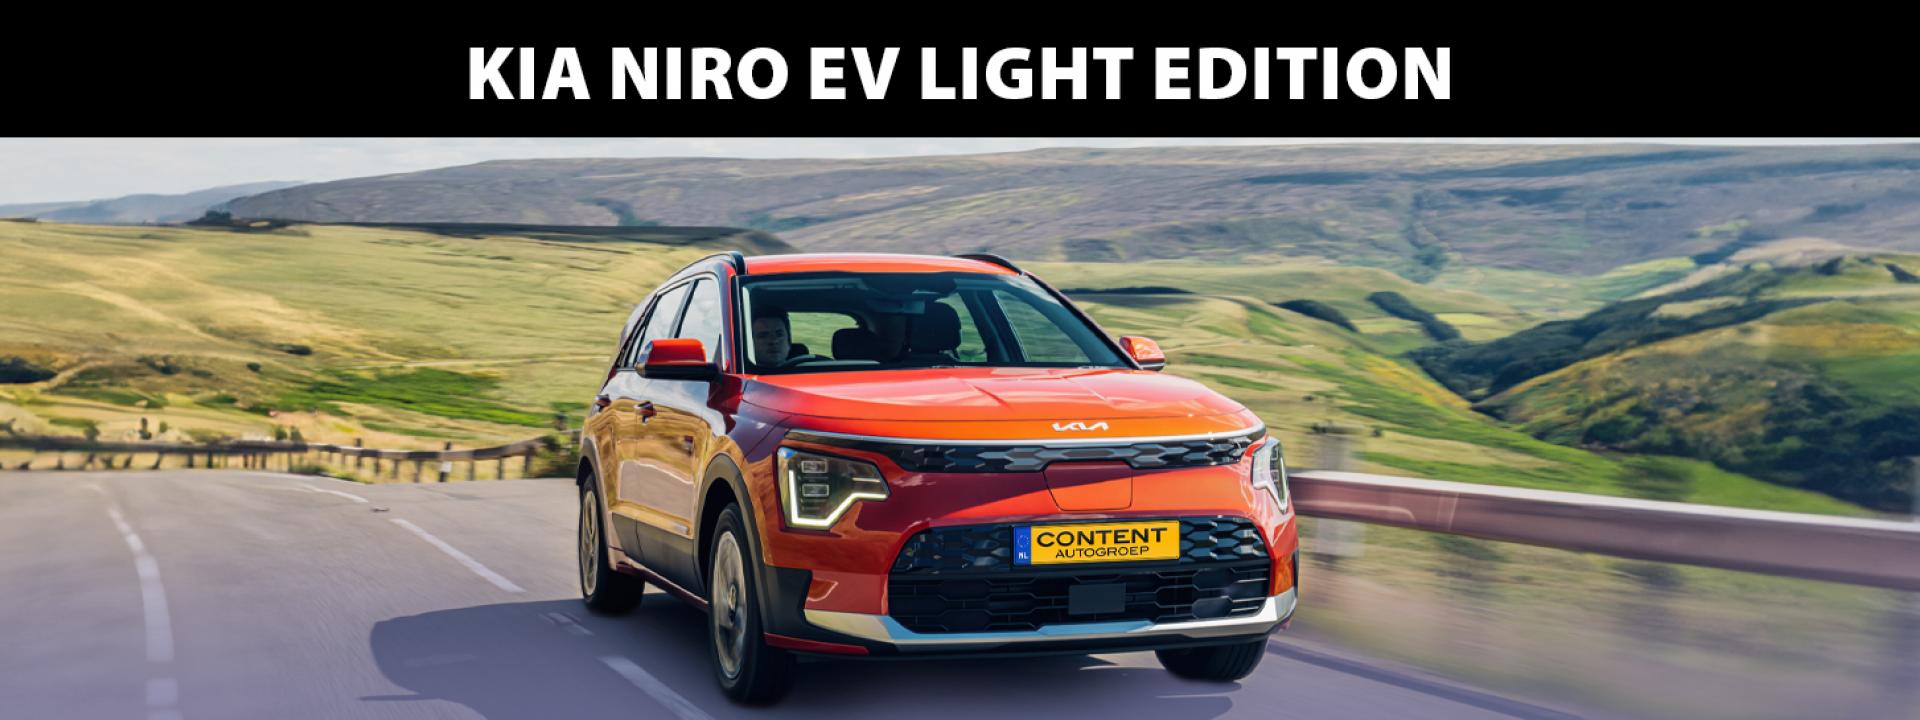 Kia Niro EV Light Edition